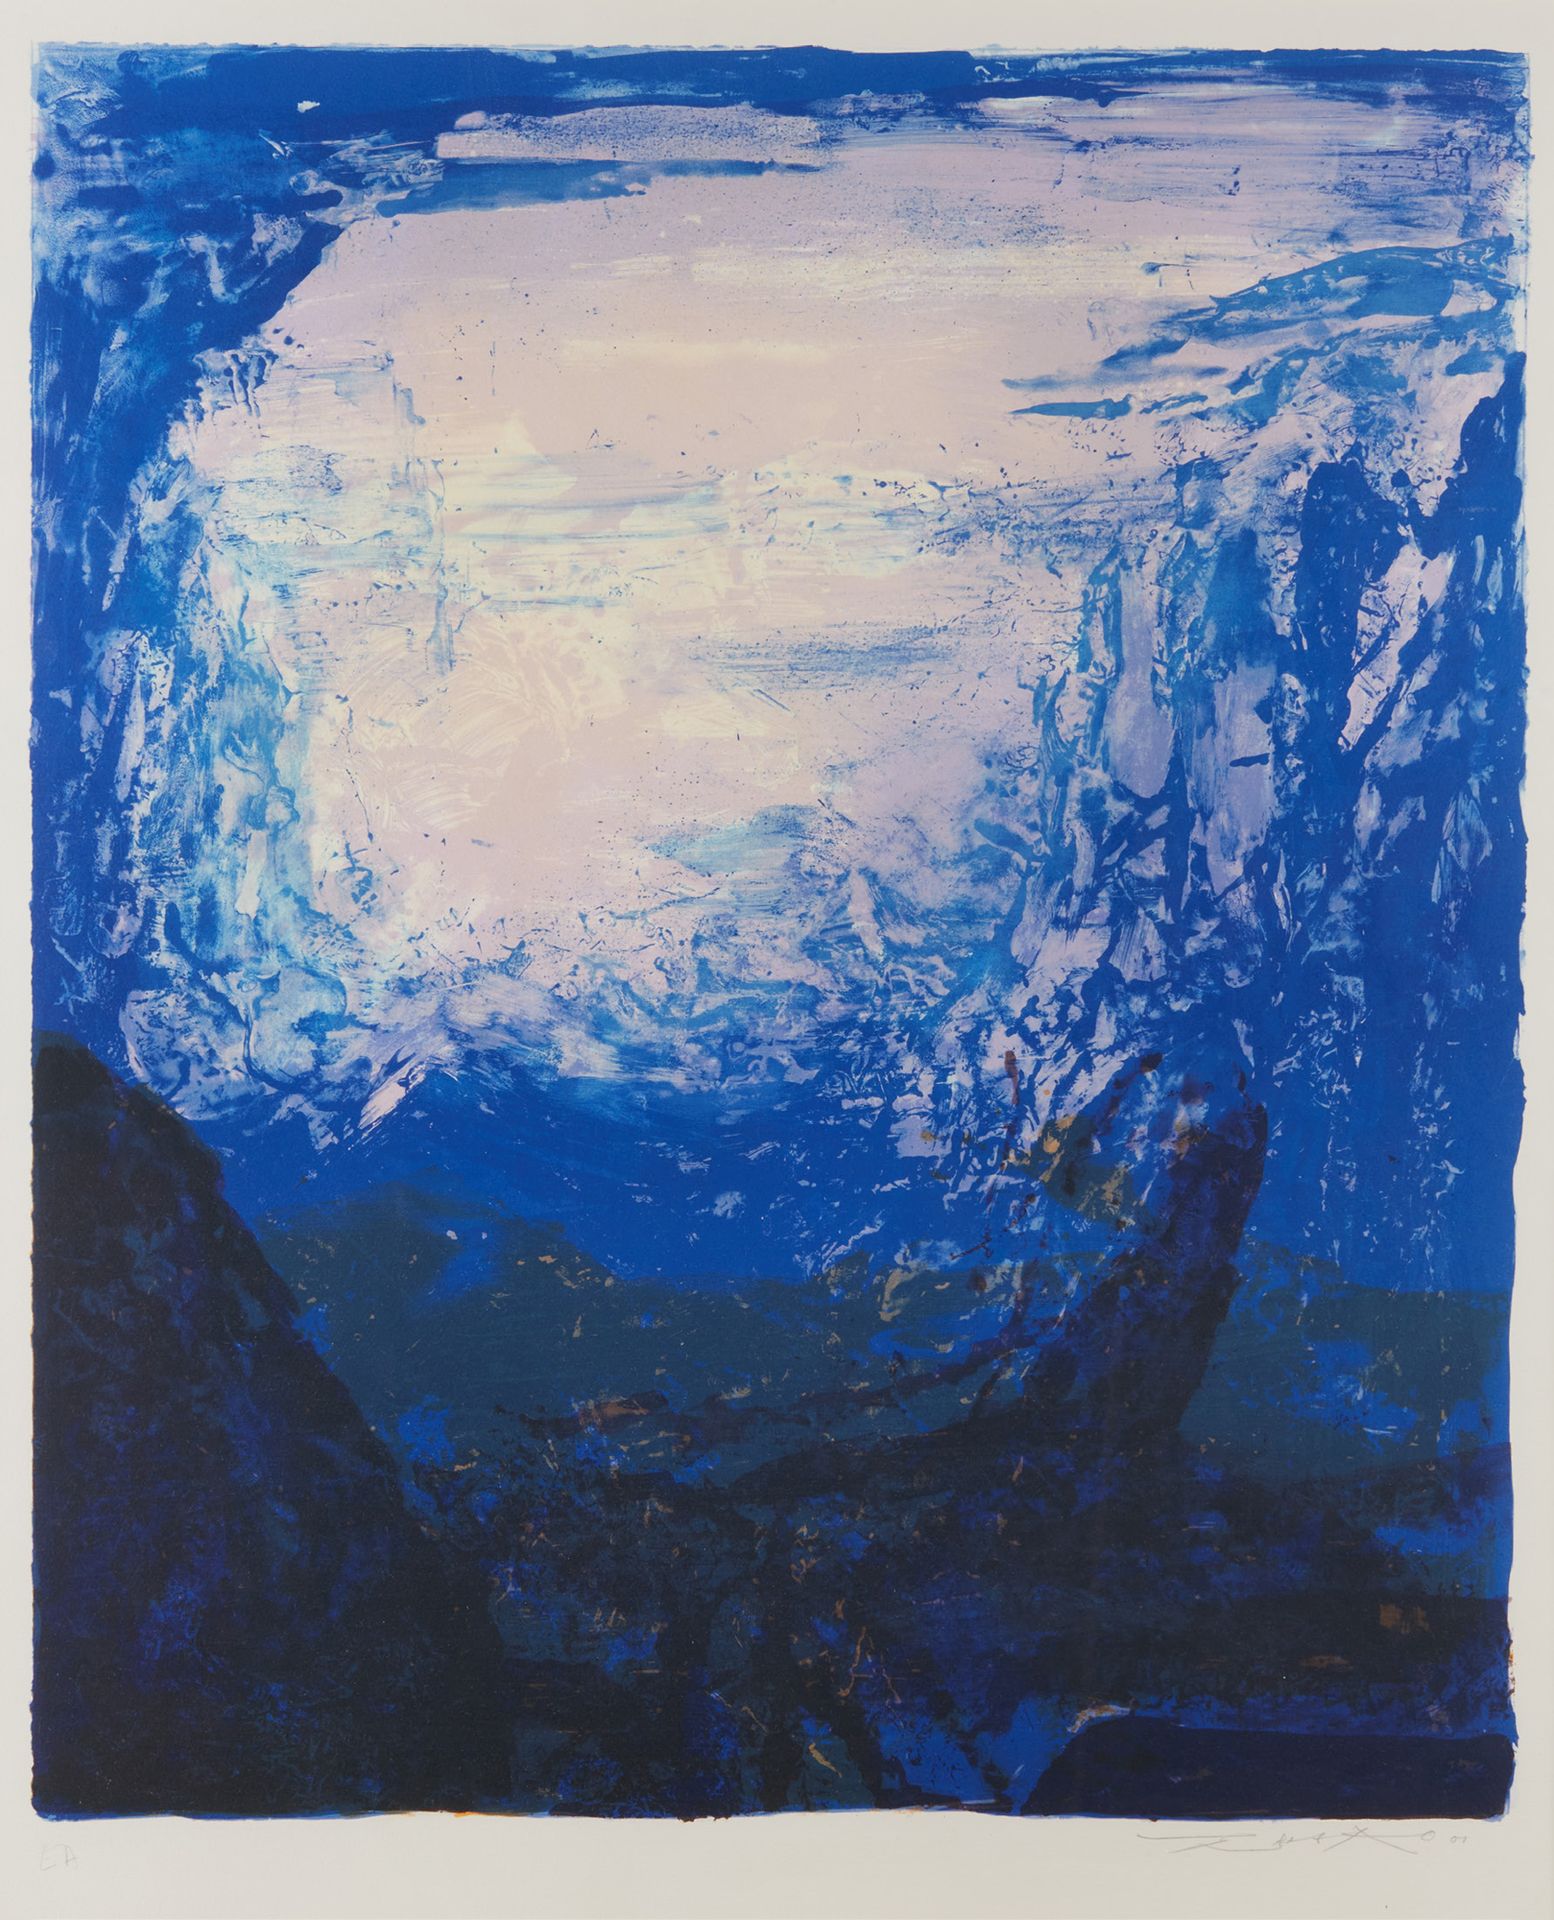 ZAO WOU-KI (1920 - 2013) 印刷品，蓝色风景构图。
右下方有签名。
在玻璃下装框。
尺寸：84 x 67 cm